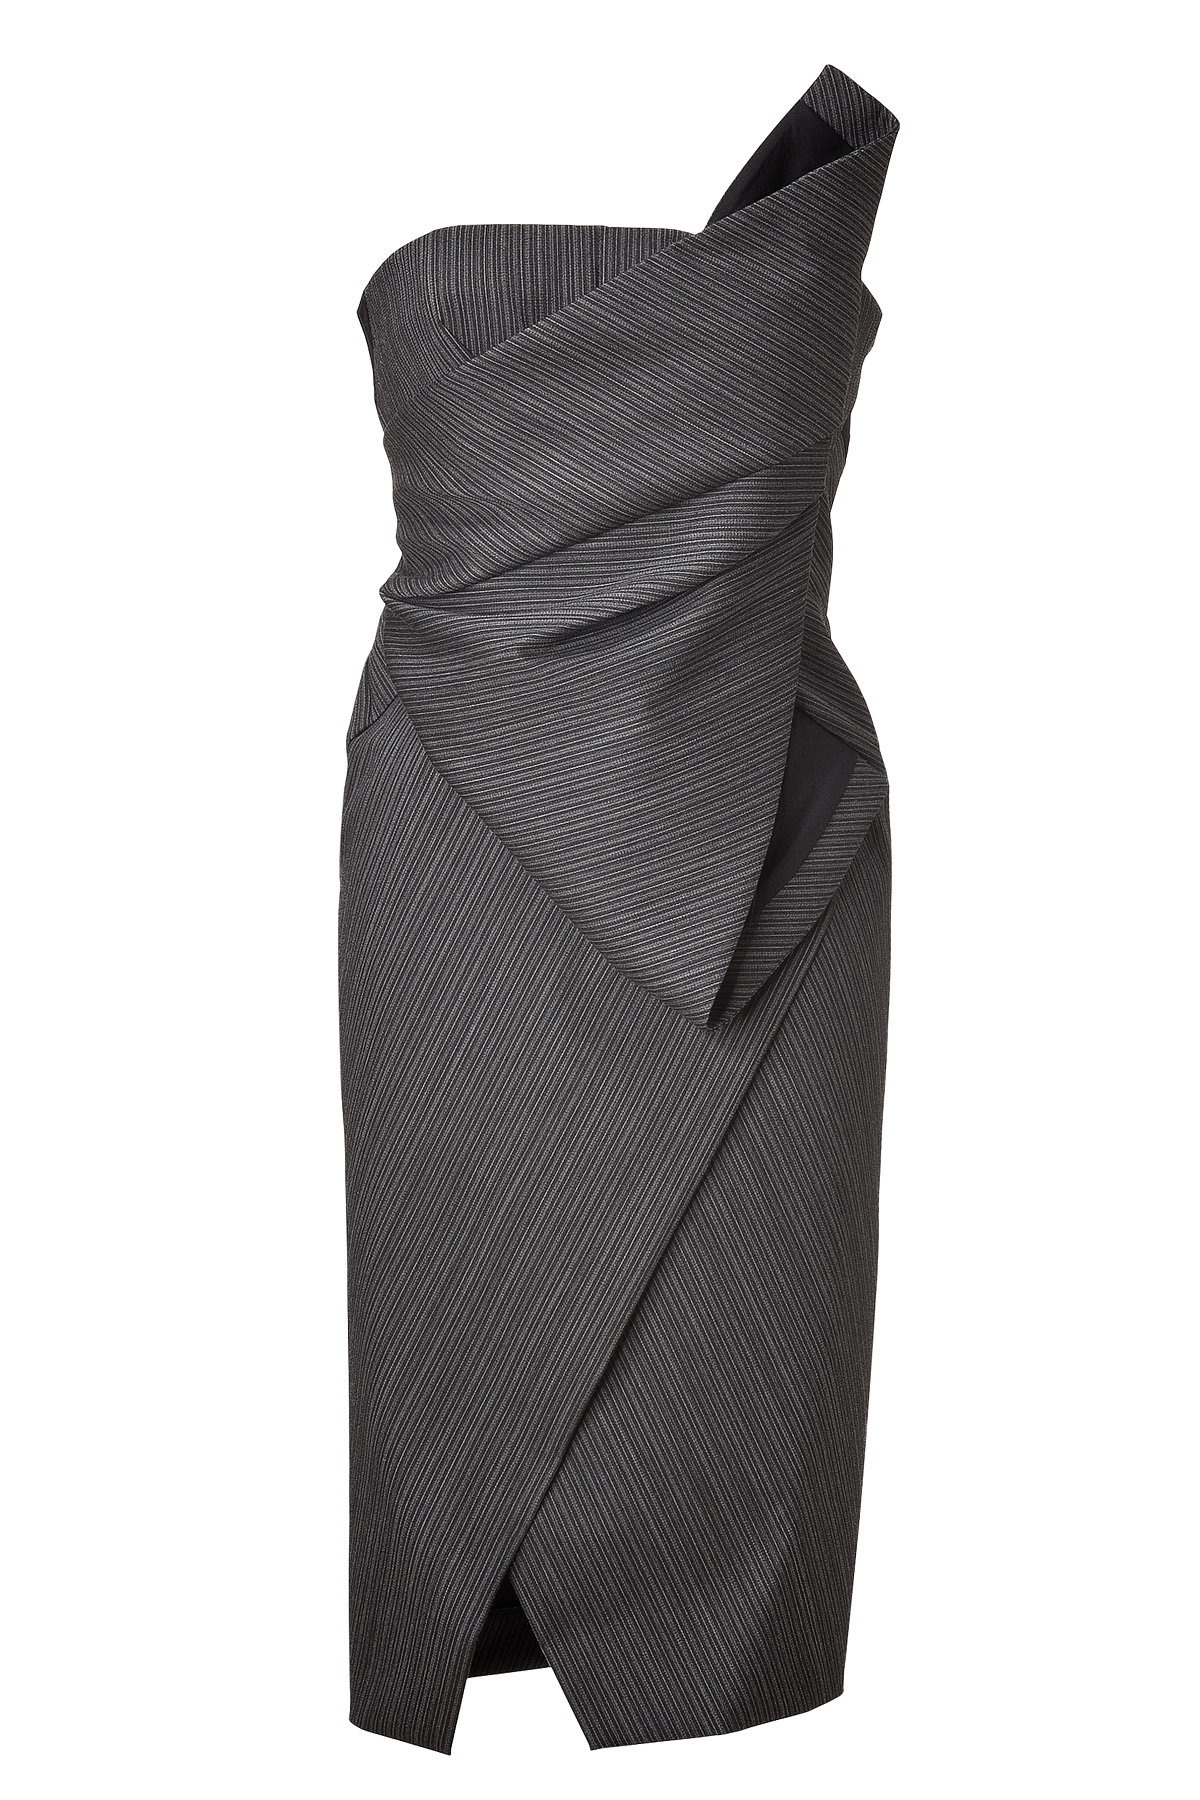 Donna Karan - Anthracite Structured Origami Bustier Dress